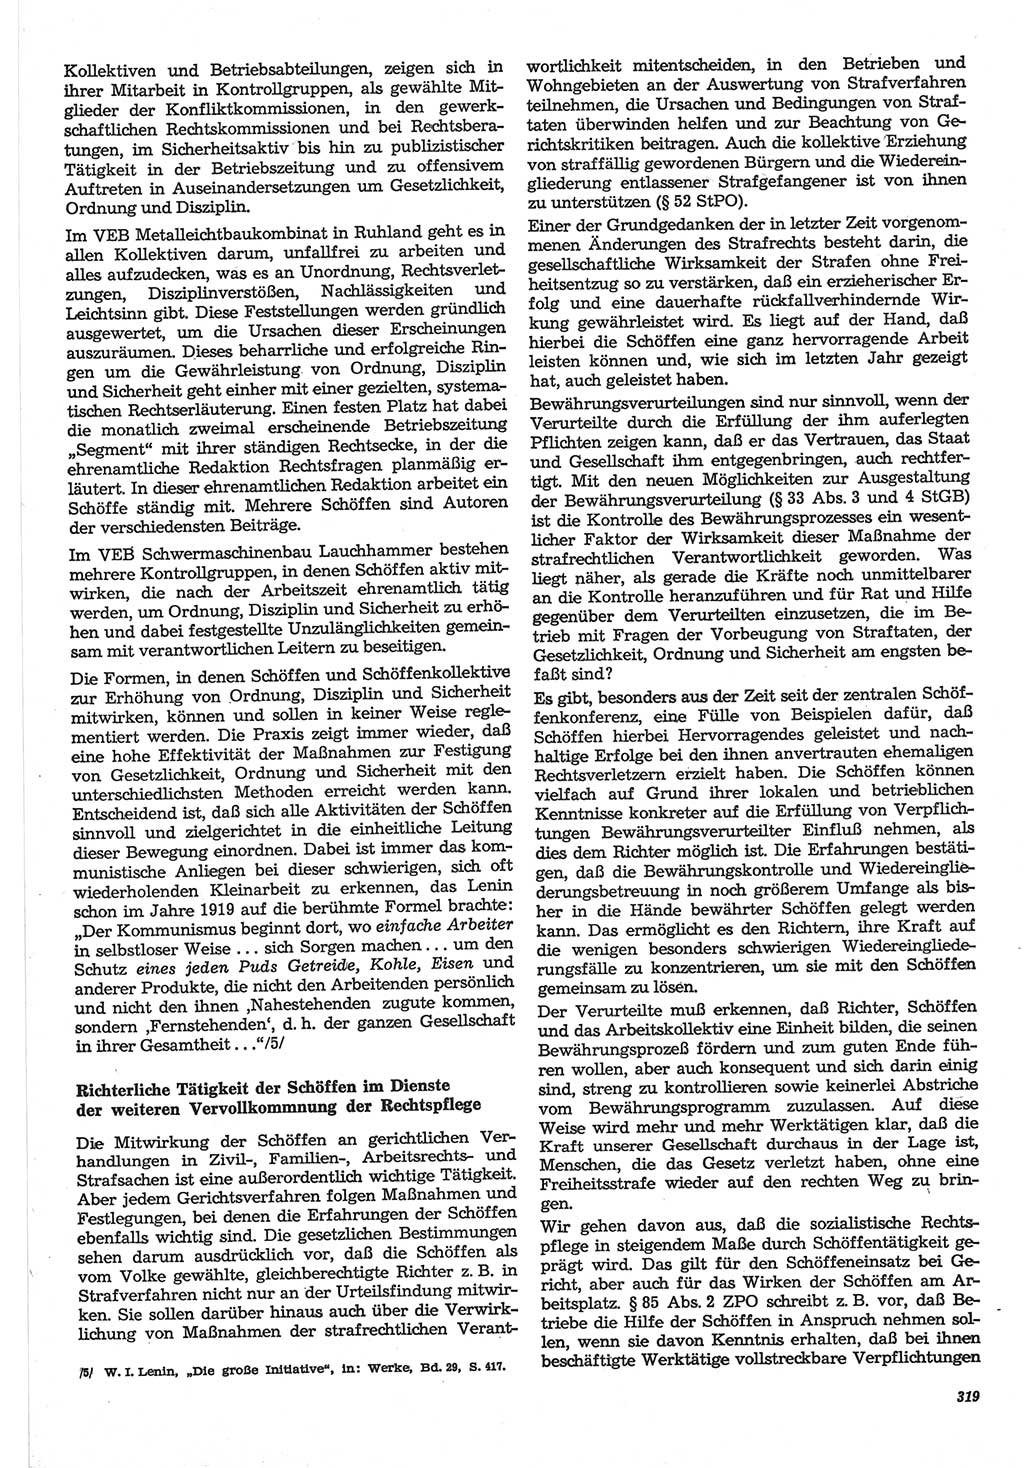 Neue Justiz (NJ), Zeitschrift für Recht und Rechtswissenschaft-Zeitschrift, sozialistisches Recht und Gesetzlichkeit, 31. Jahrgang 1977, Seite 319 (NJ DDR 1977, S. 319)